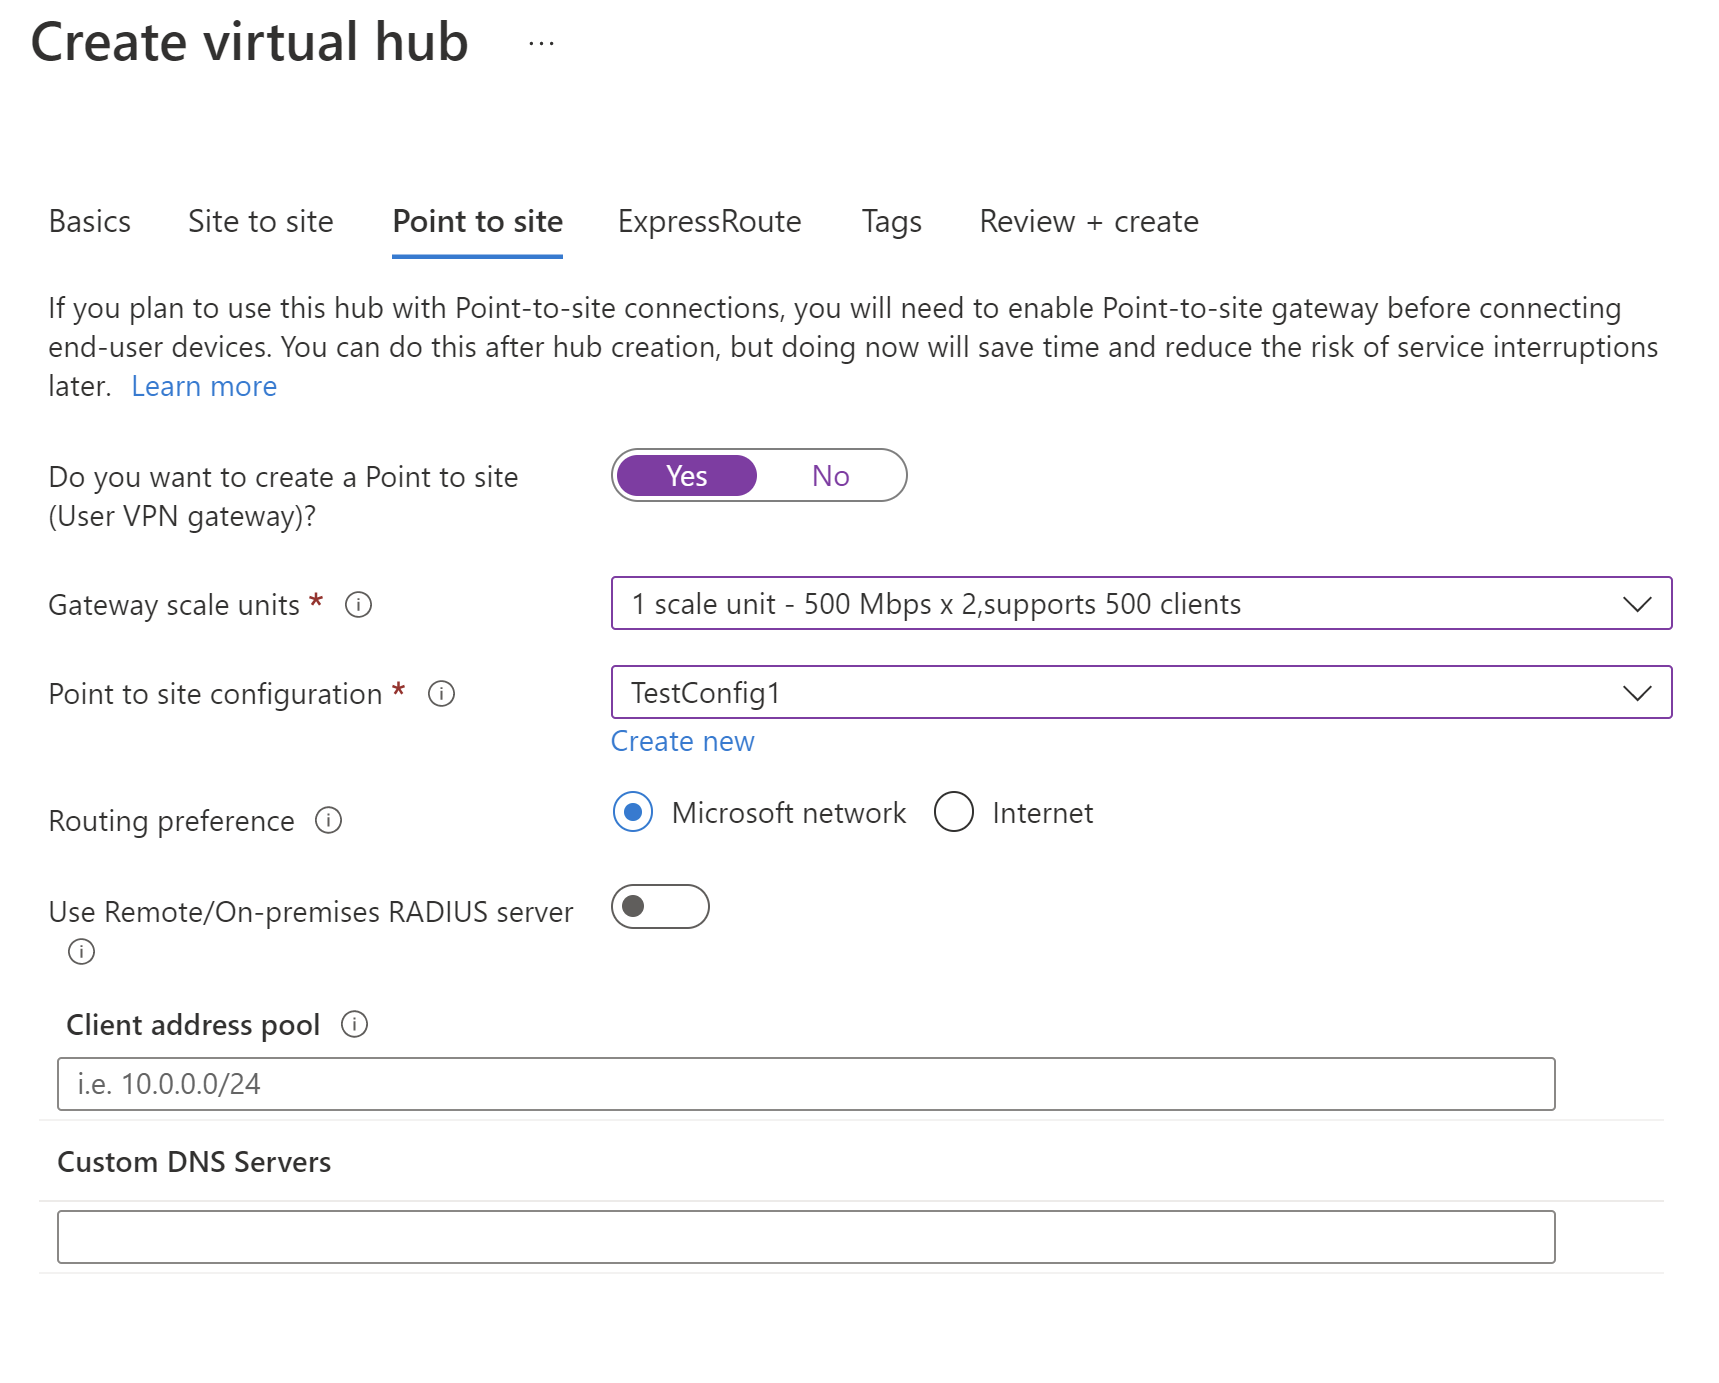 Captura de tela da configuração do hub virtual com ponto a site selecionado.